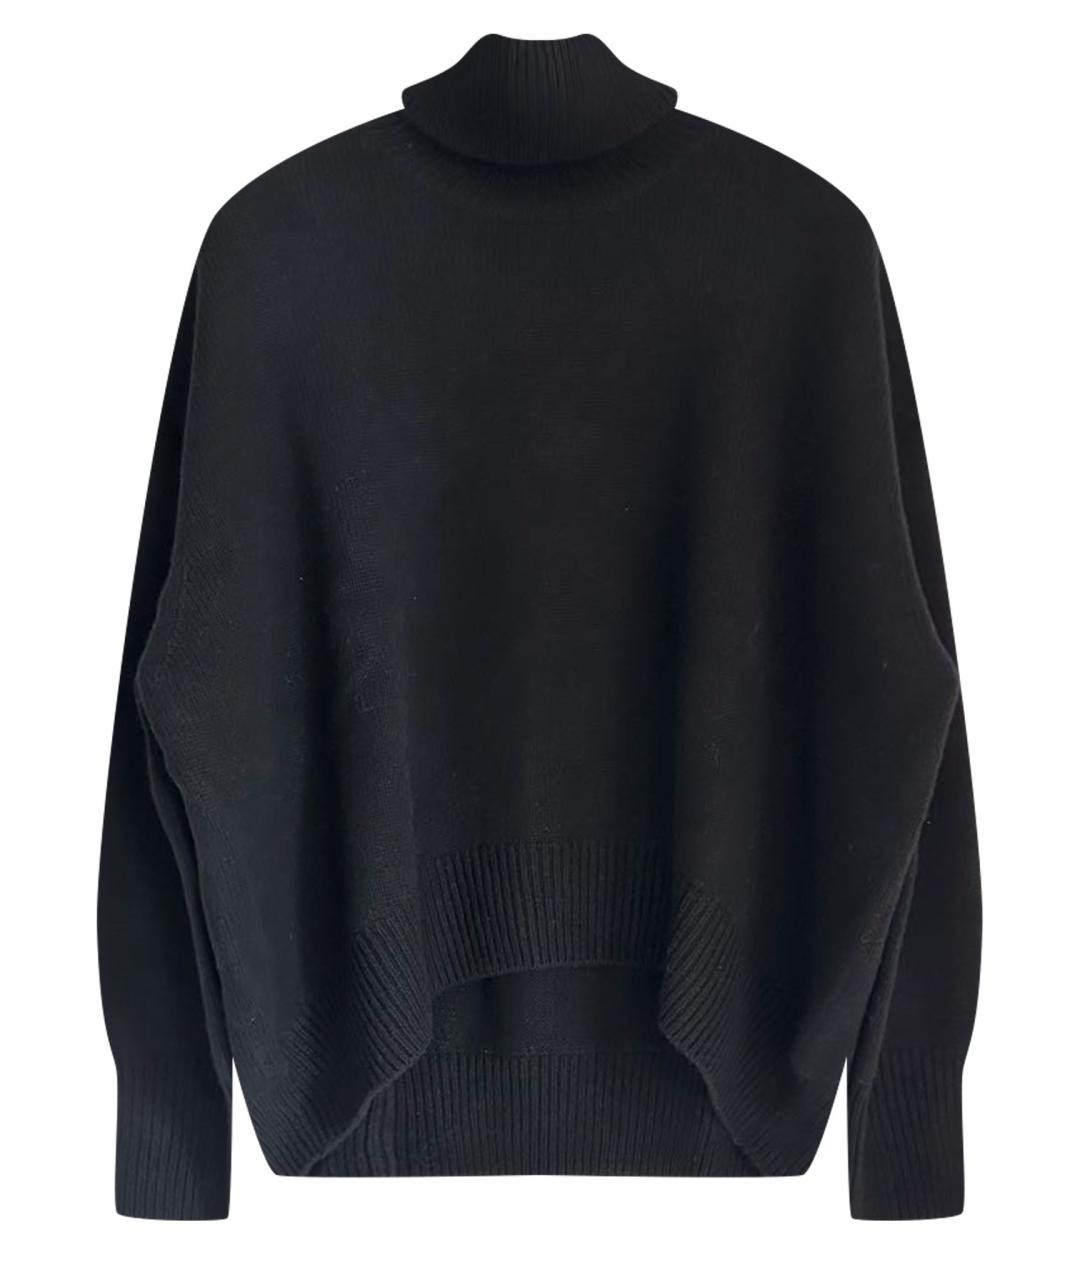 12 STOREEZ Черный кашемировый джемпер / свитер, фото 1